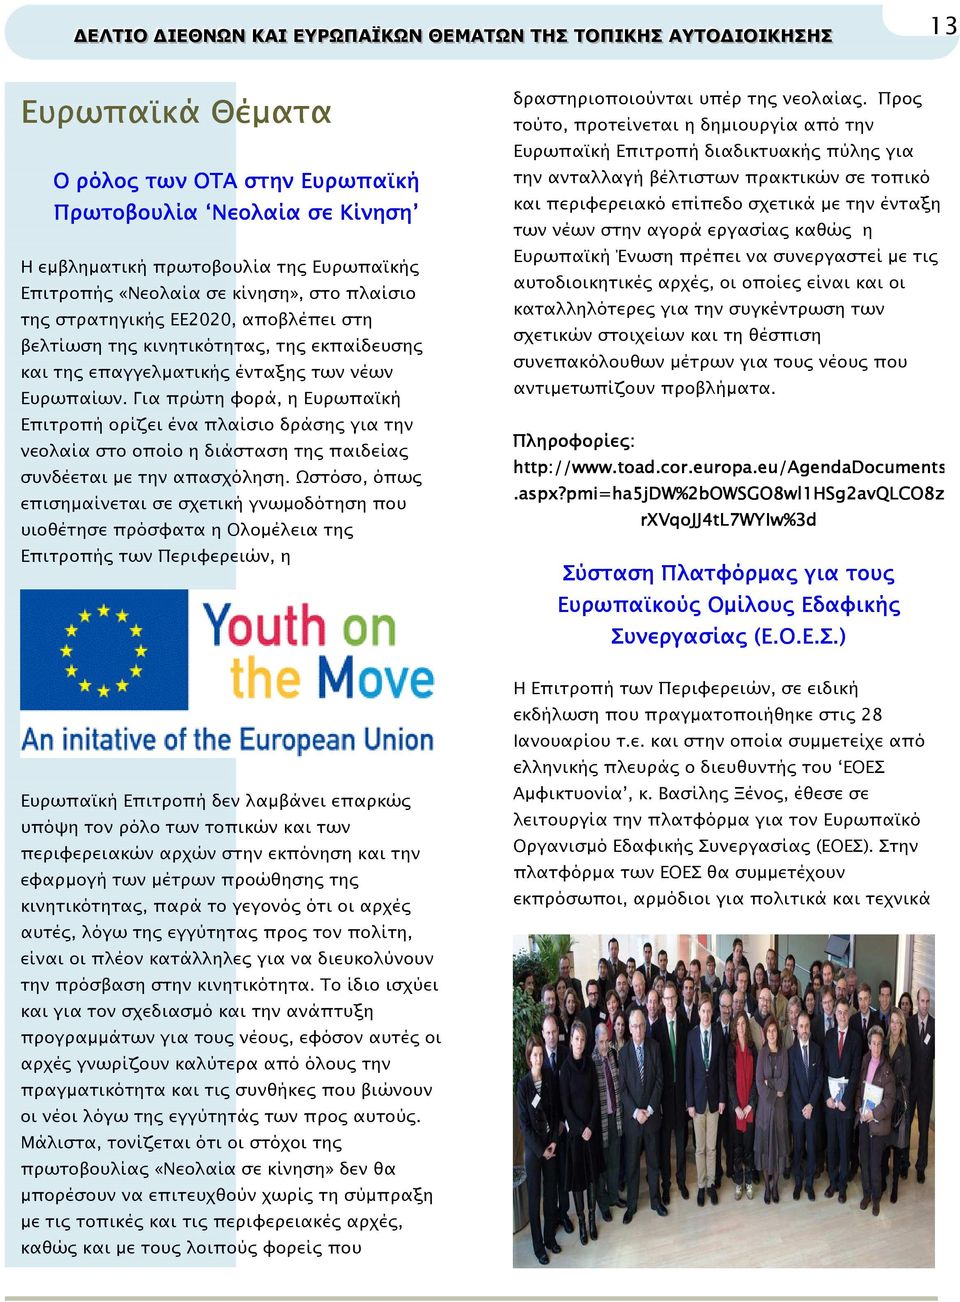 Για πρώτη φορά, η Ευρωπα κή Επιτροπή ορίζει ένα πλαίσιο δράση για την νεολαία στο οποίο η διάσταση τη παιδεία συνδέεται µε την απασχόληση.